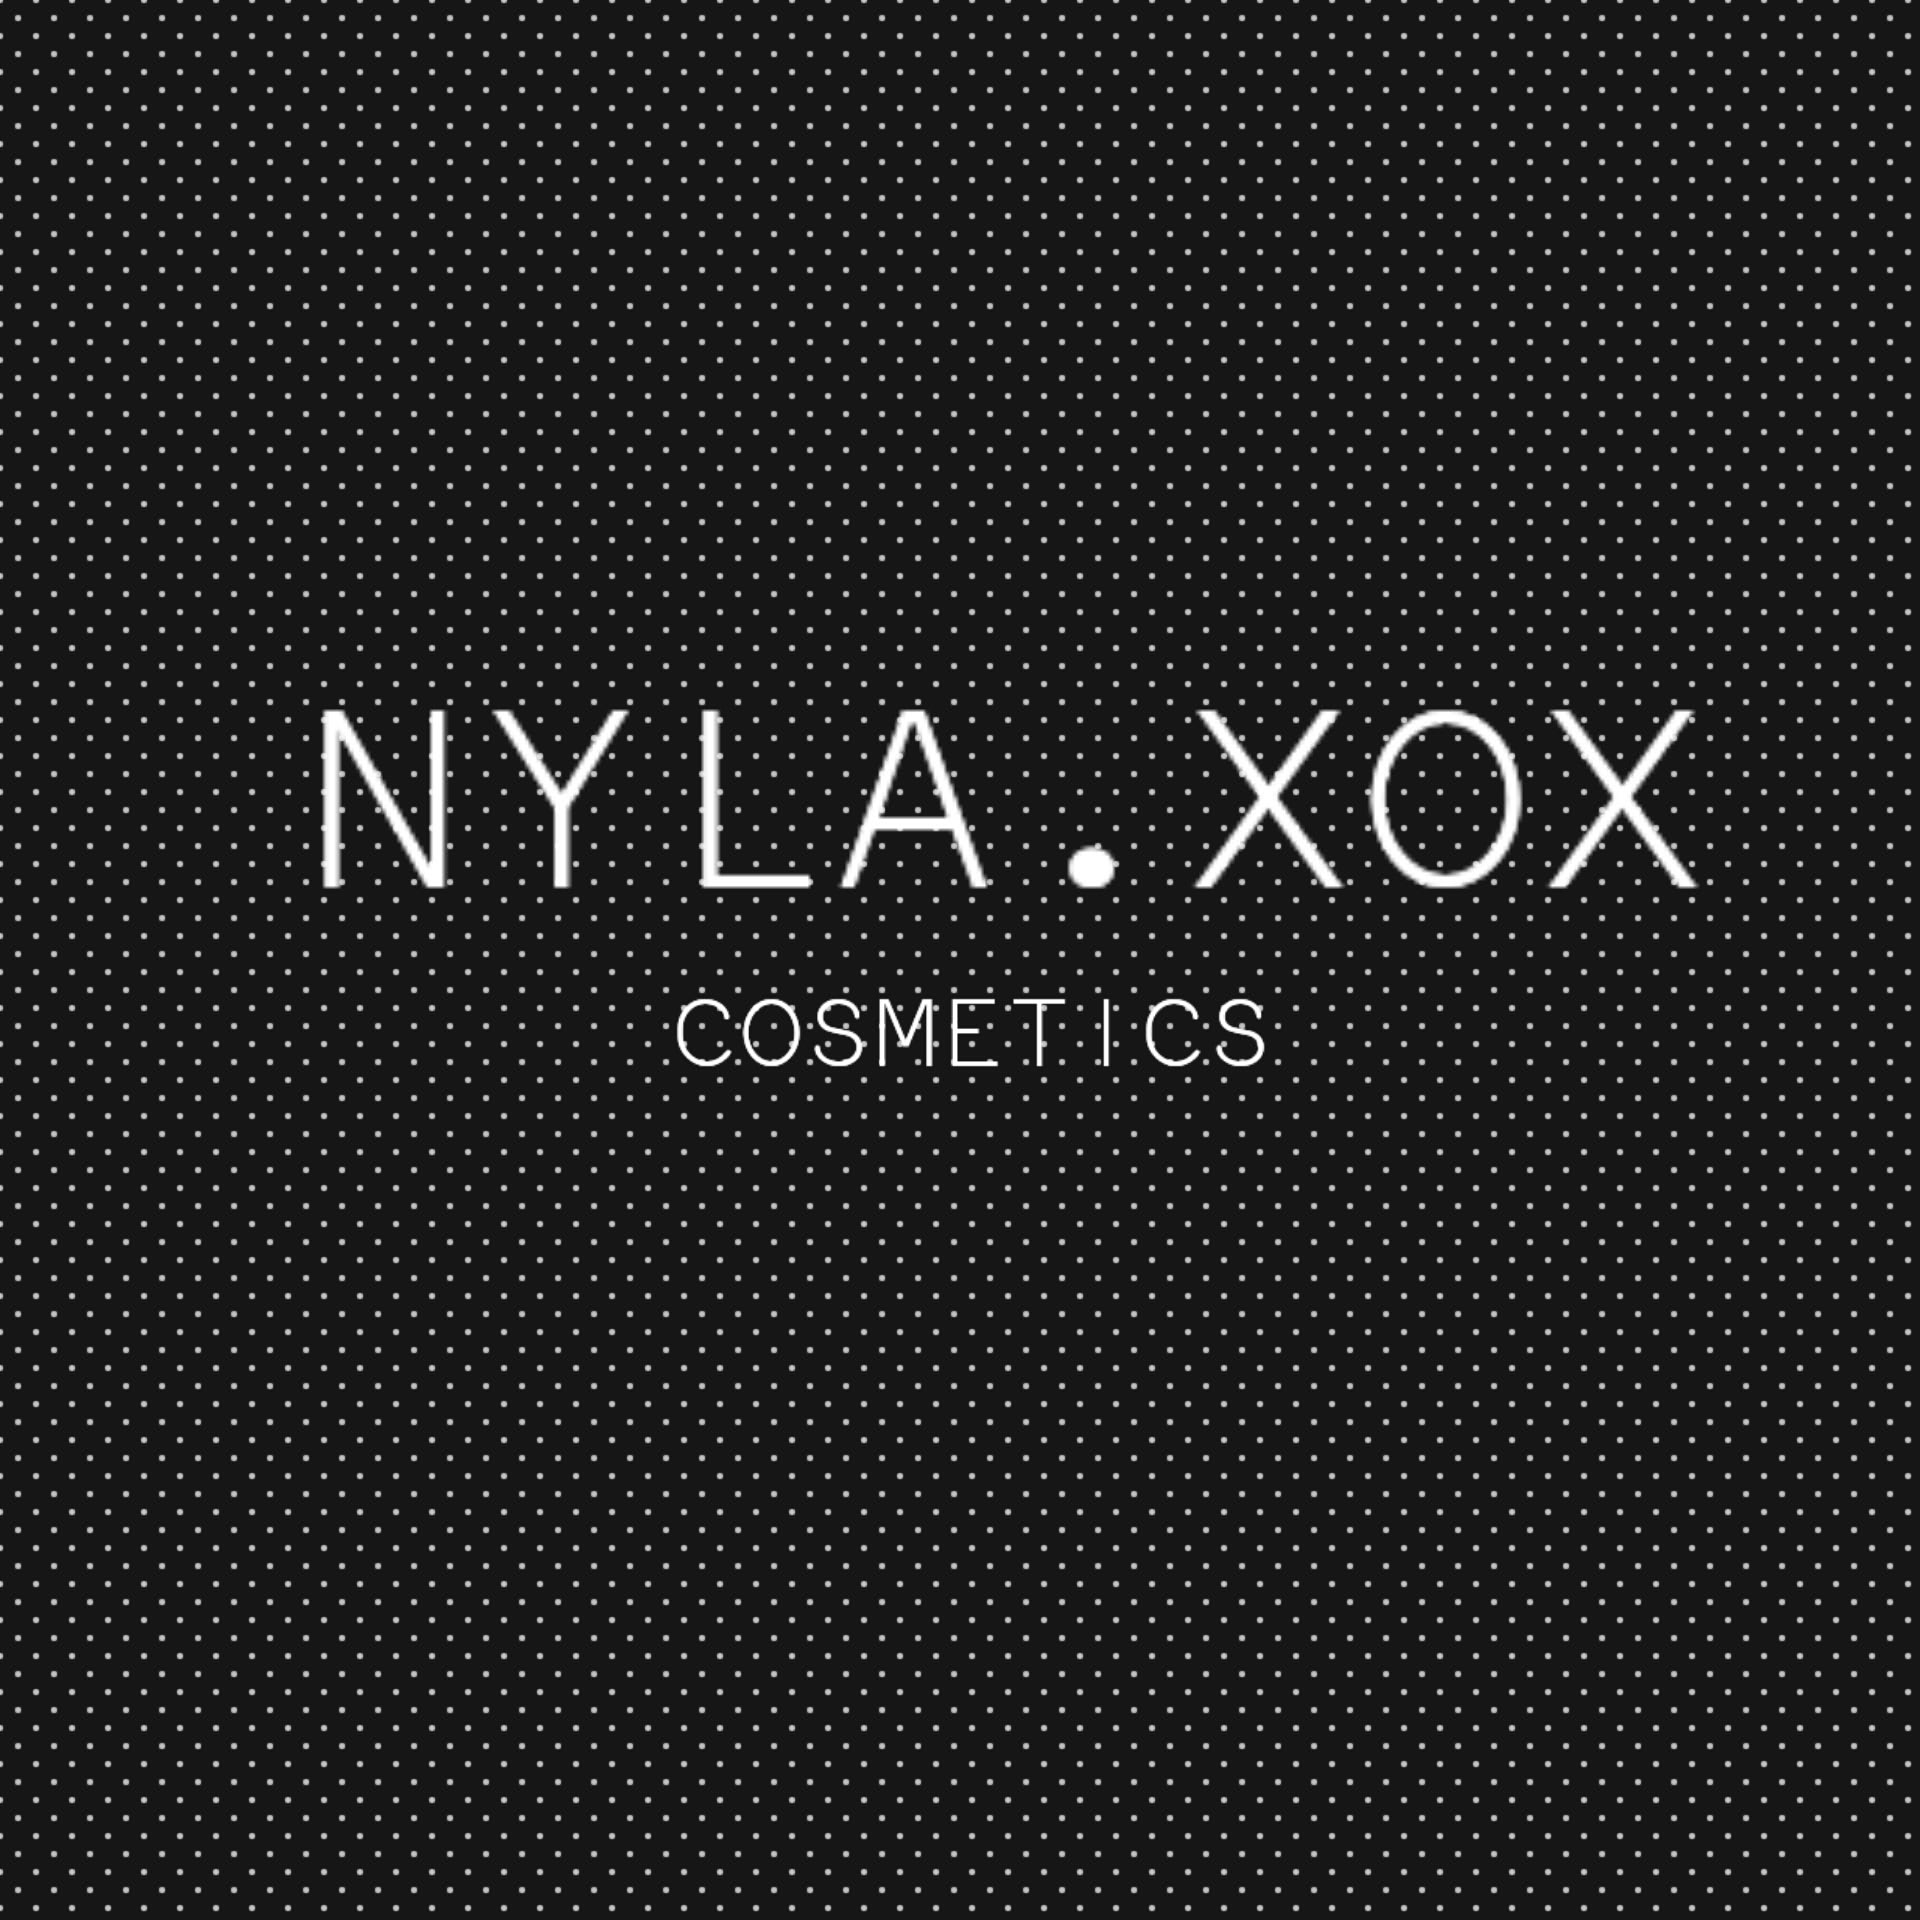 Nyla Xox Cosmetics